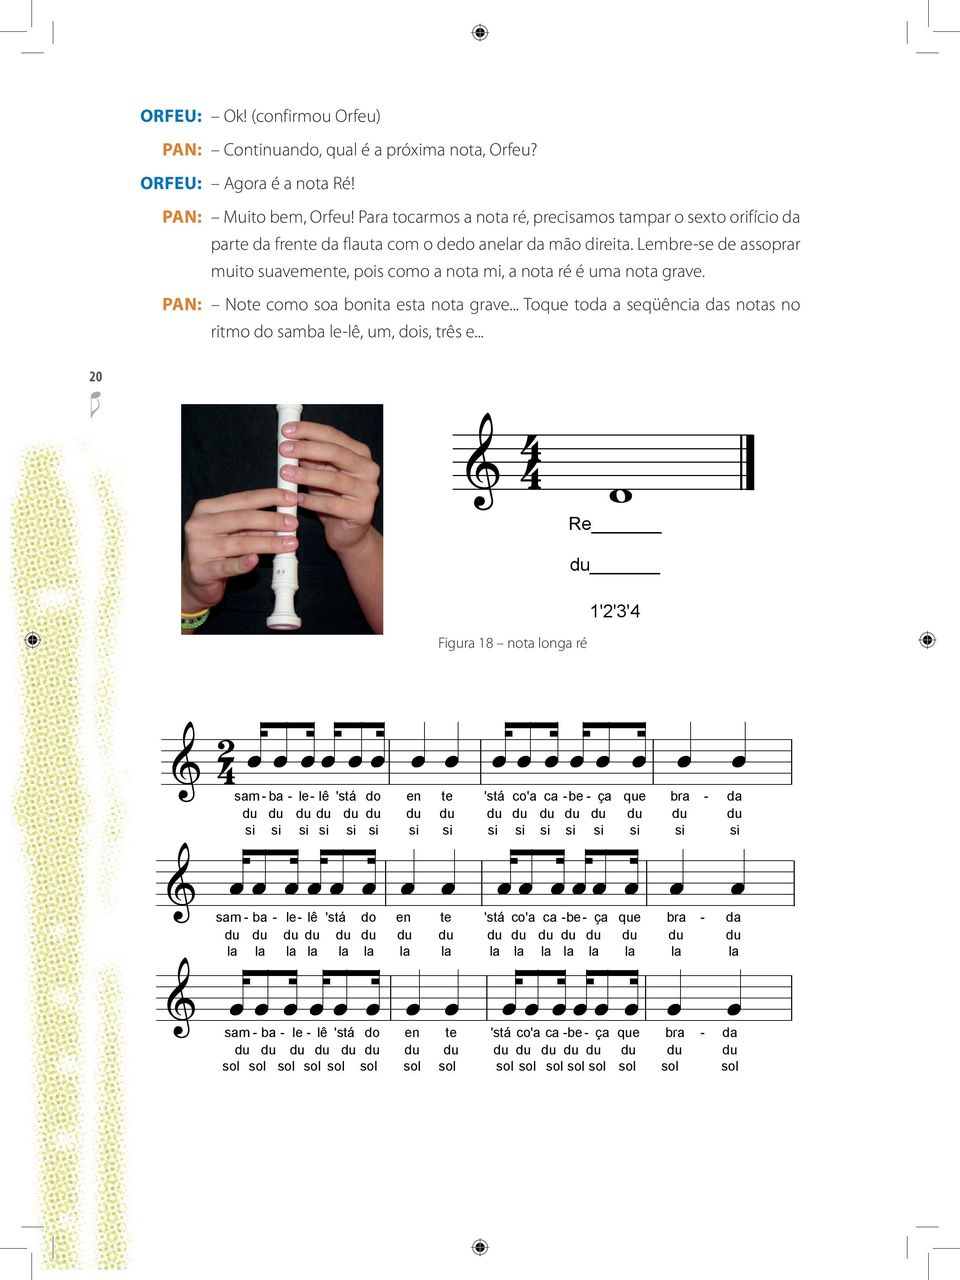 Para tocarmos a nota ré, precisamos tampar o sexto orifício da parte da frente da flauta com o dedo anelar da mão direita.